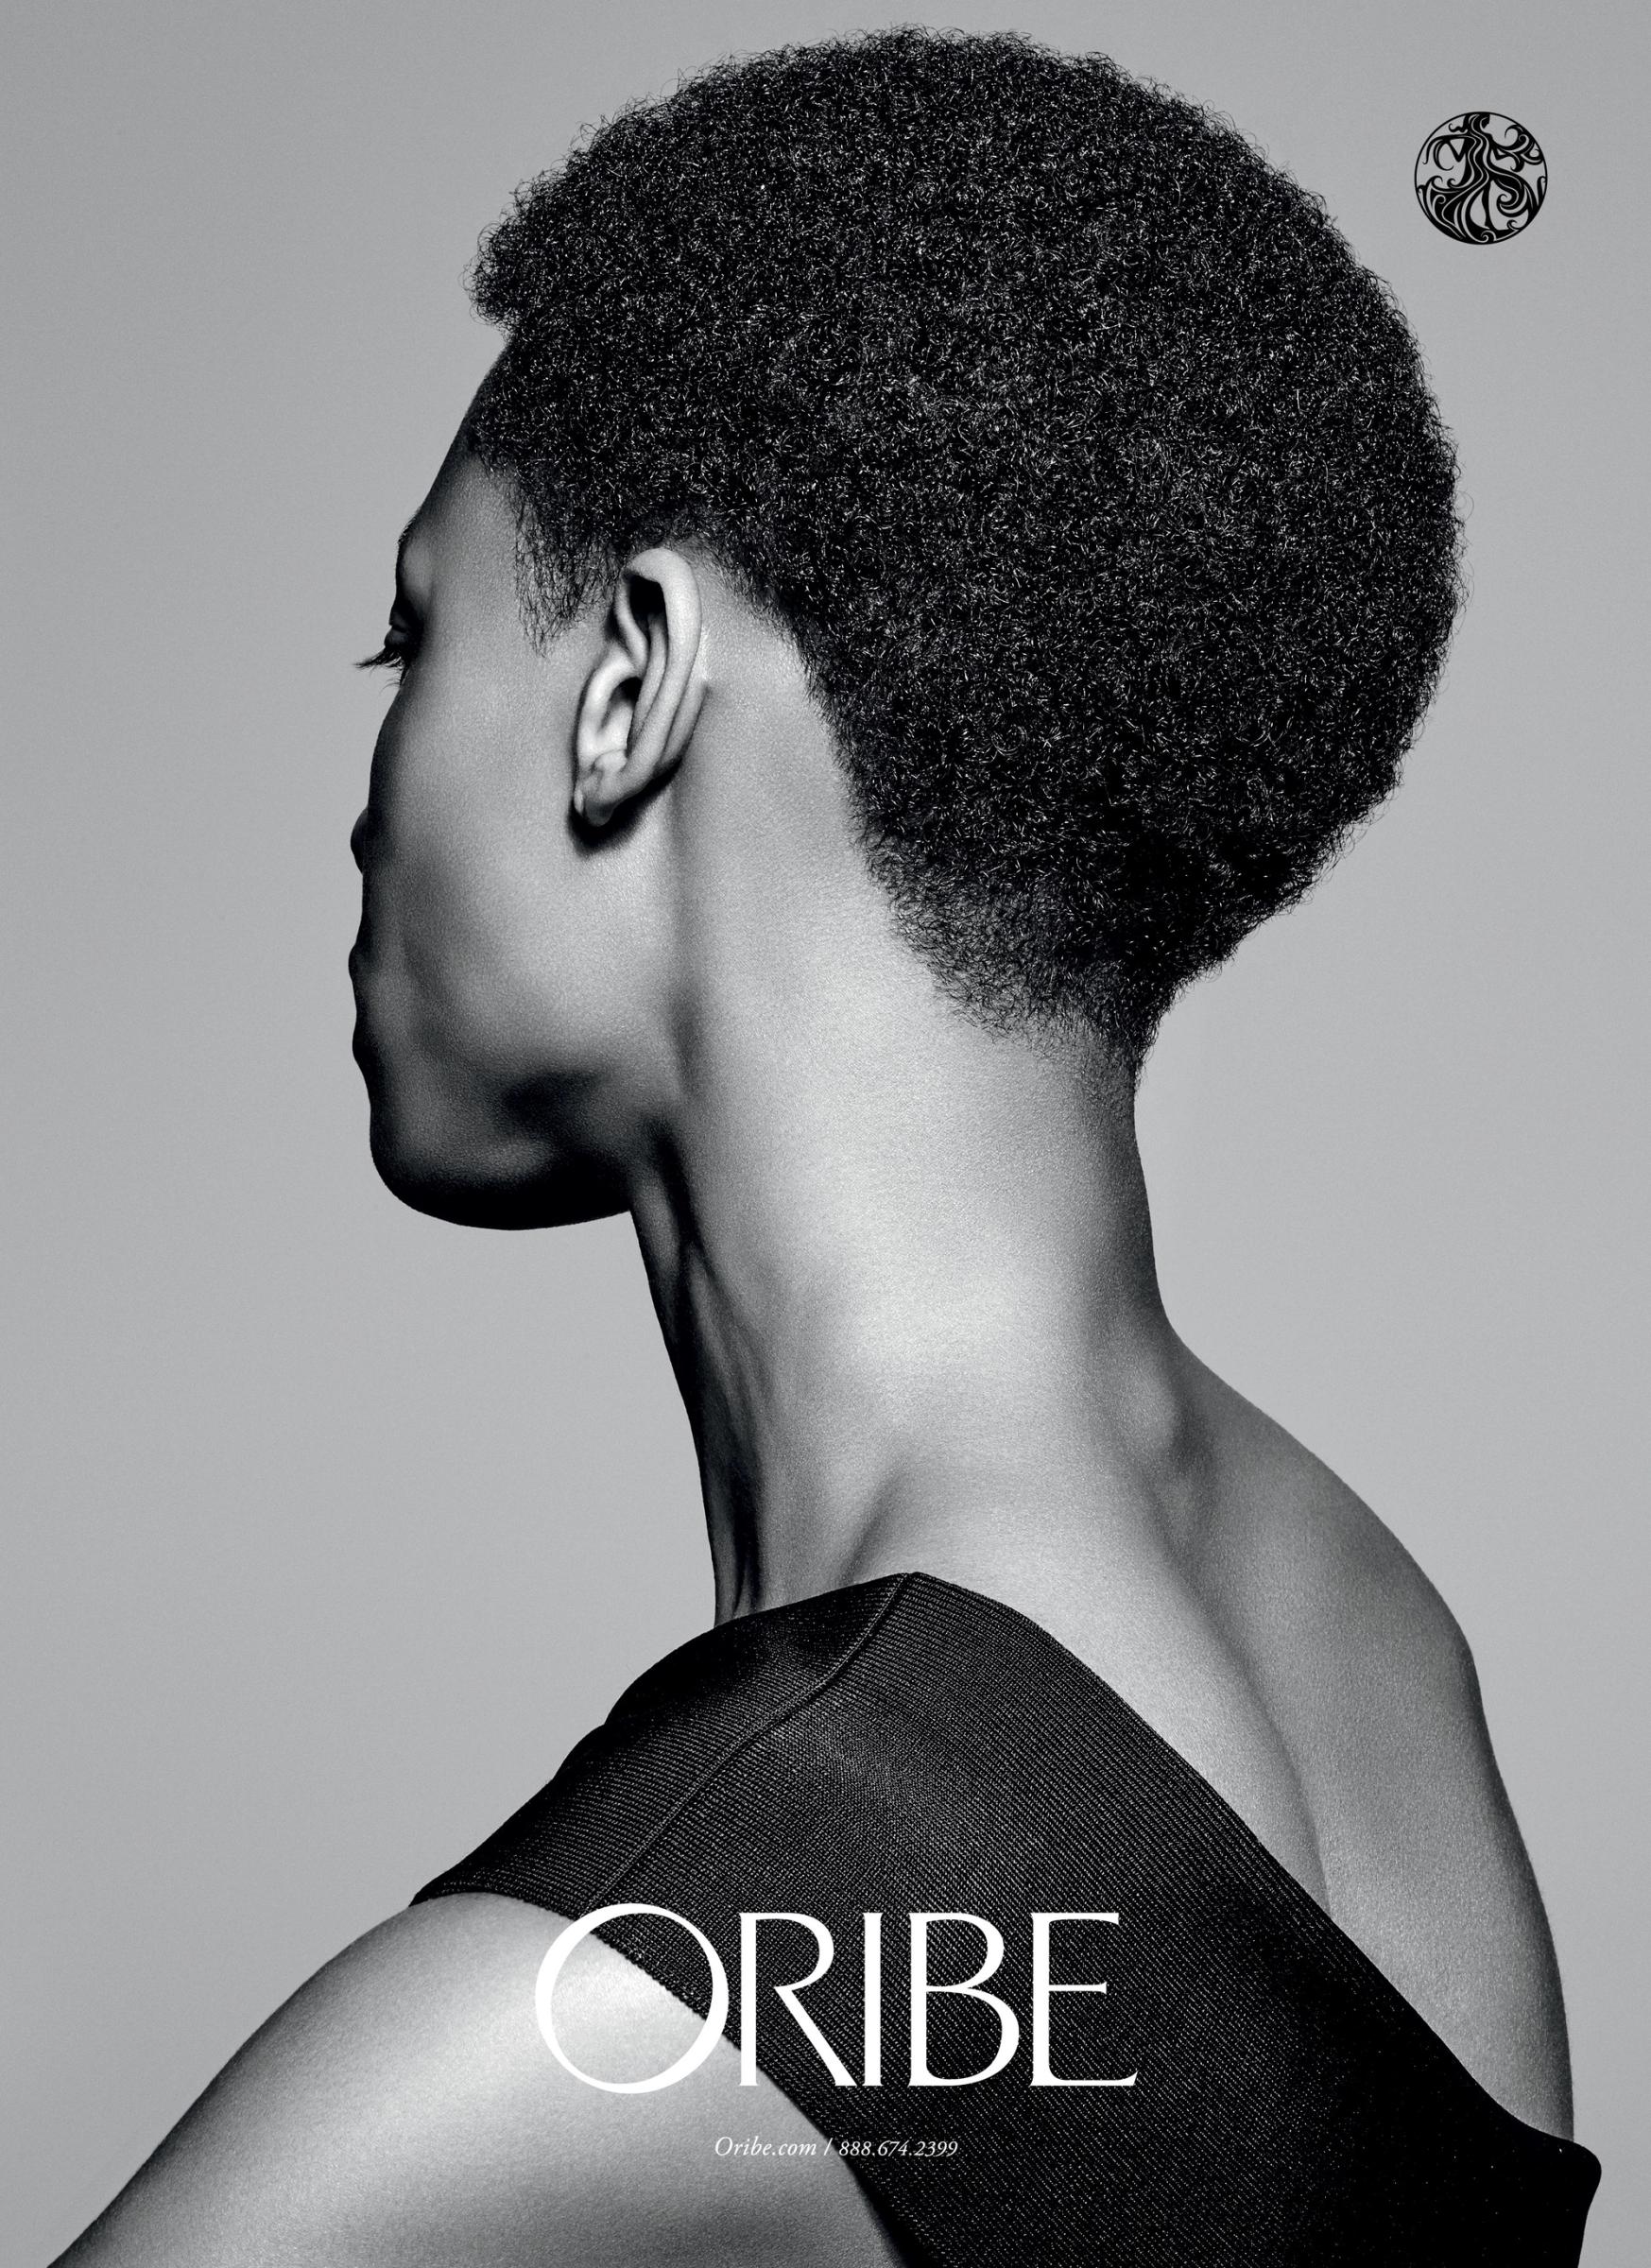 ORIBE - richard burbidge styled by Sabina Schreder